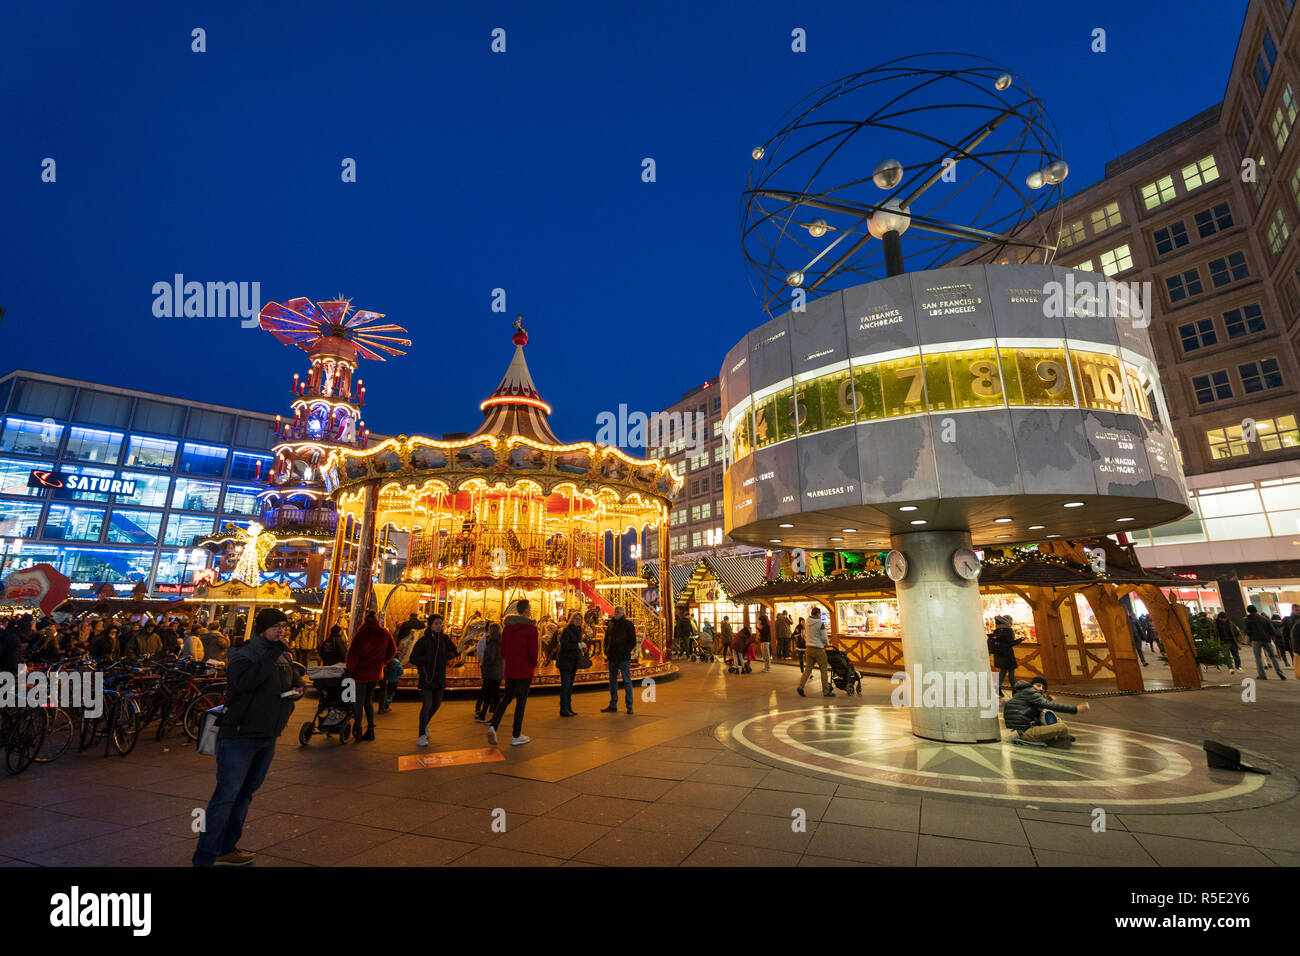 Marché de Noel à Alexanderplatz dans Mitte, Berlin, Allemagne. Horloge mondiale et la photo en hauteur double carousel Banque D'Images